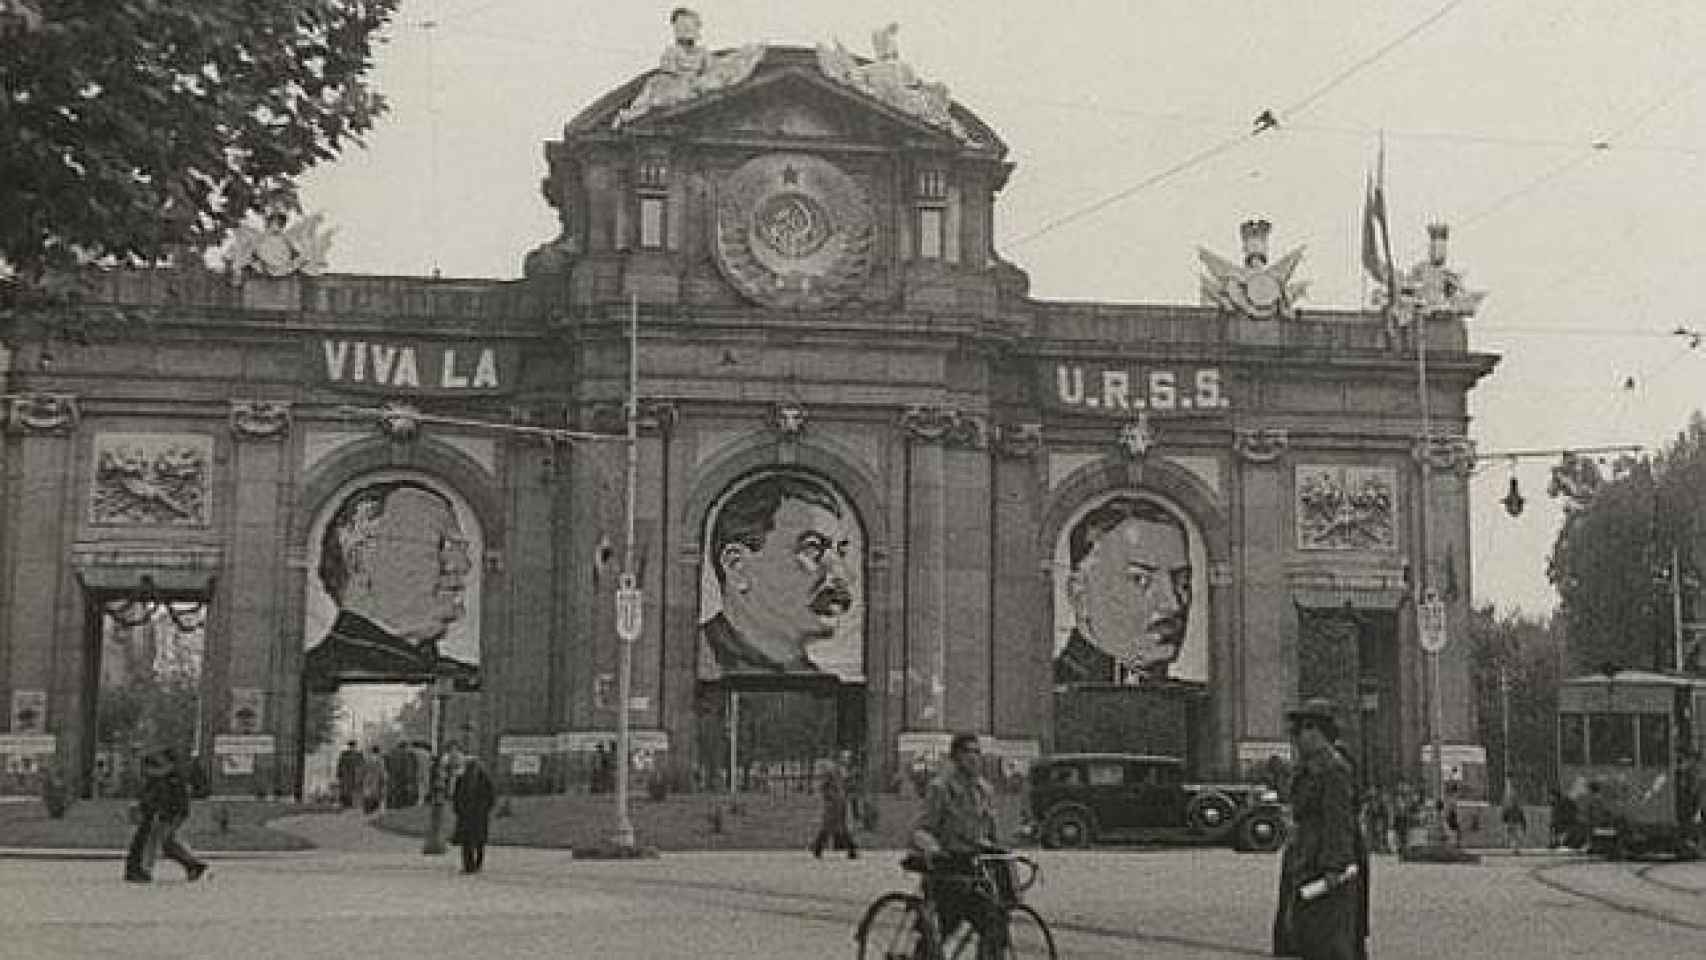 Imagen de la Puerta de Alcalá con loas a la URSS y sus líderes. Foto: Wikimedia Commons